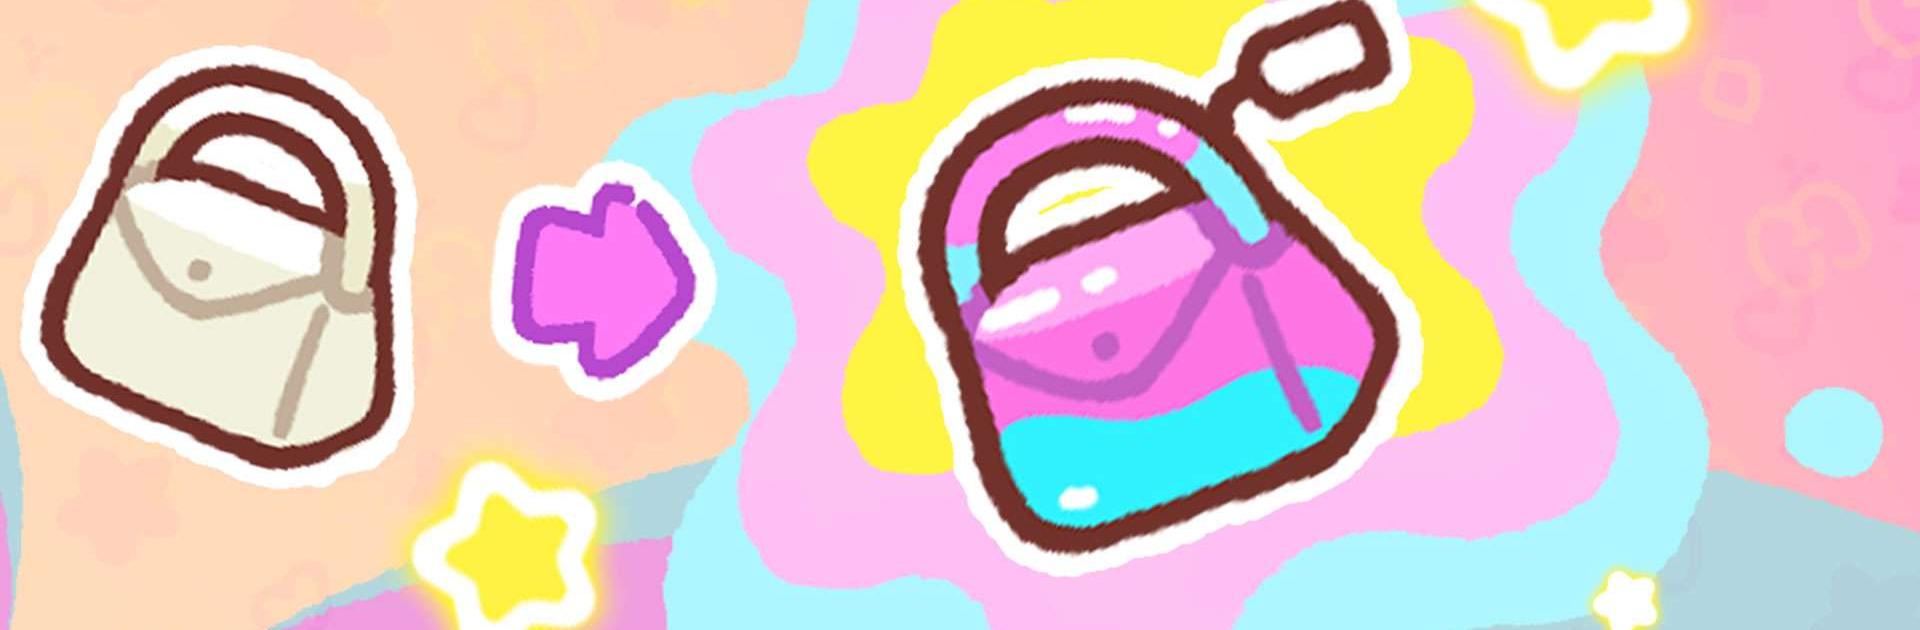 햄스터 가방 타이쿤 : 명품 가방을 만들어요!